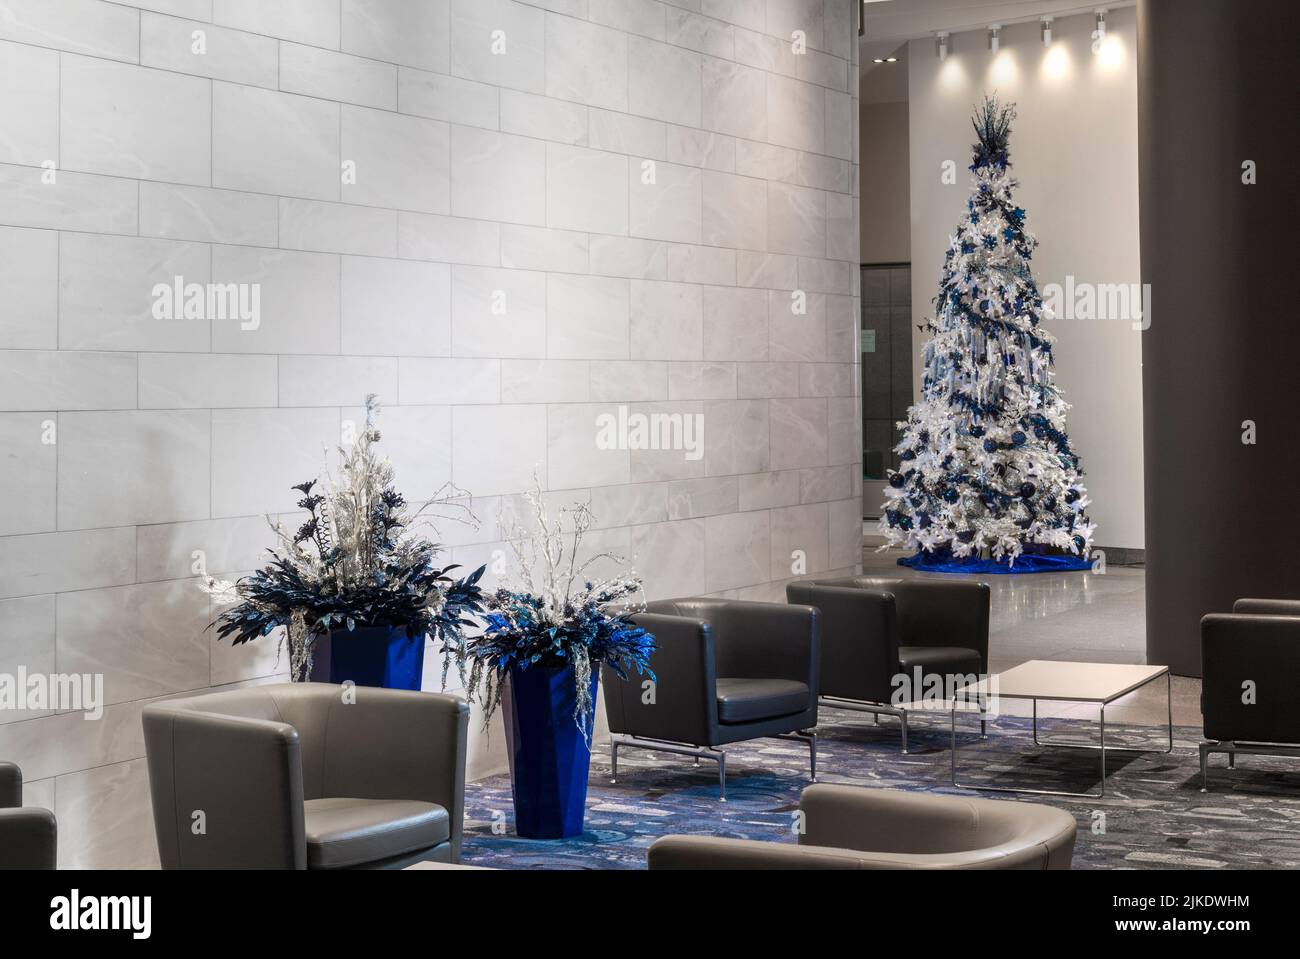 Edificio commerciale, moderna lobby per uffici decorata per Natale con albero di Natale, Philadelphia, Pennsylvania USA Foto Stock